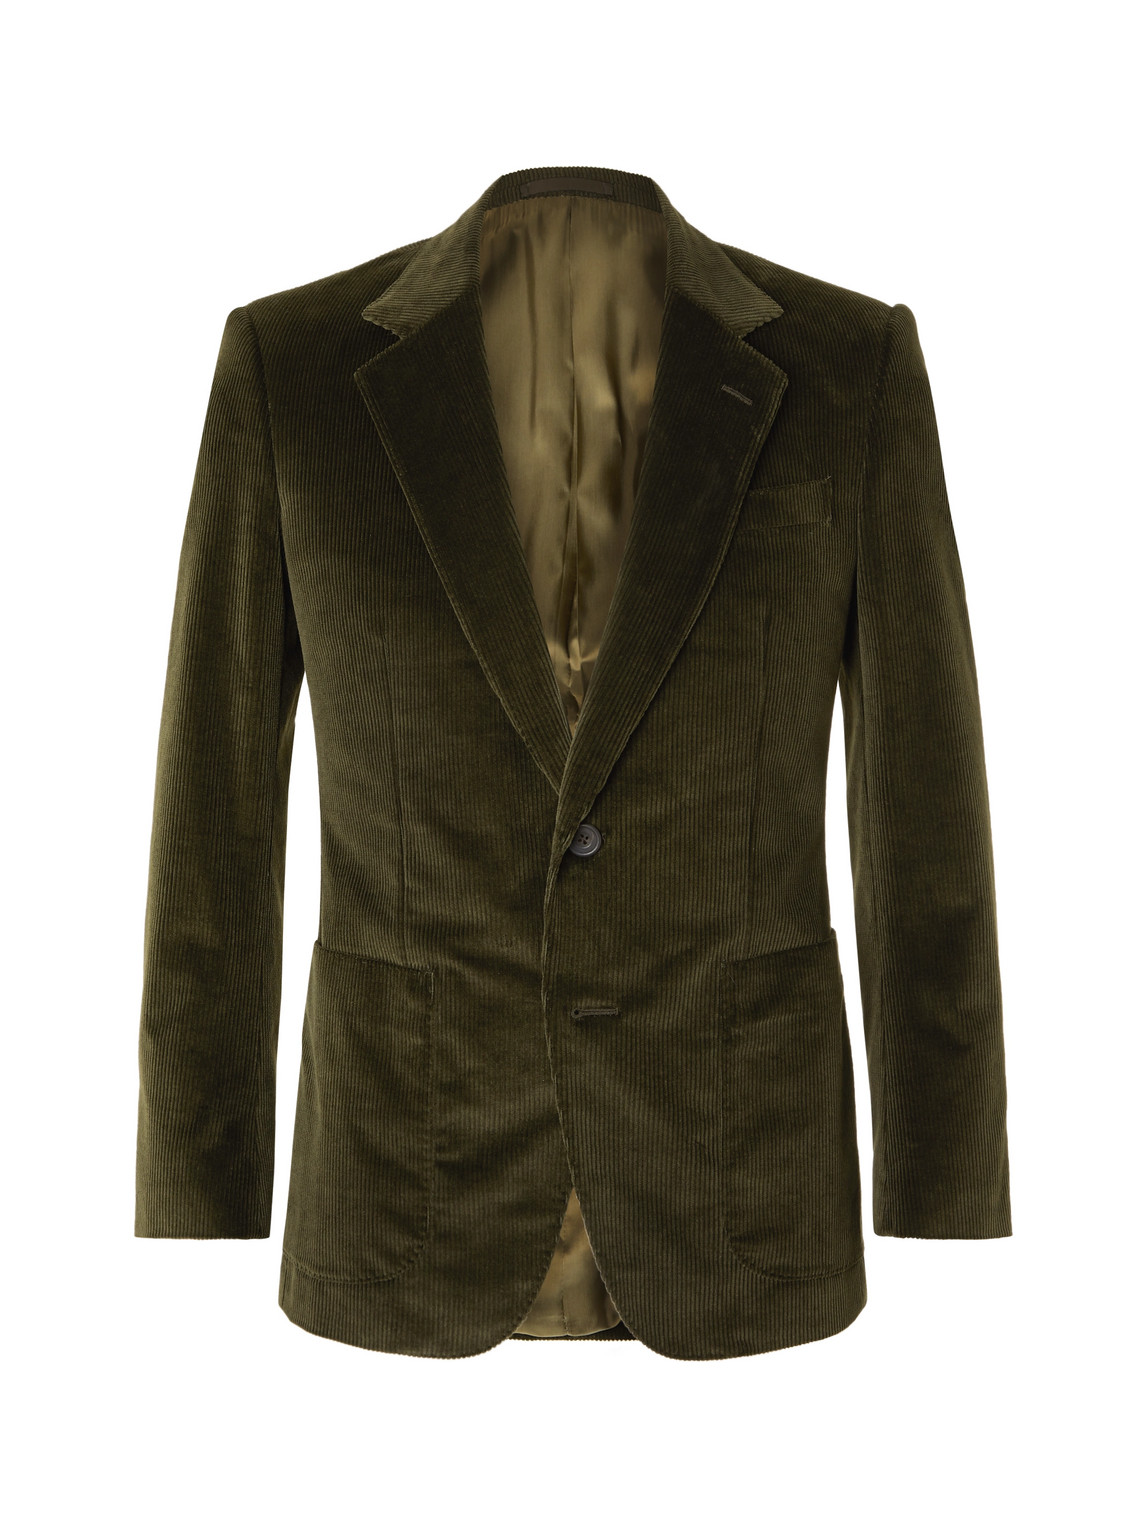 Slim-Fit Cotton-Blend Corduroy Suit Jacket